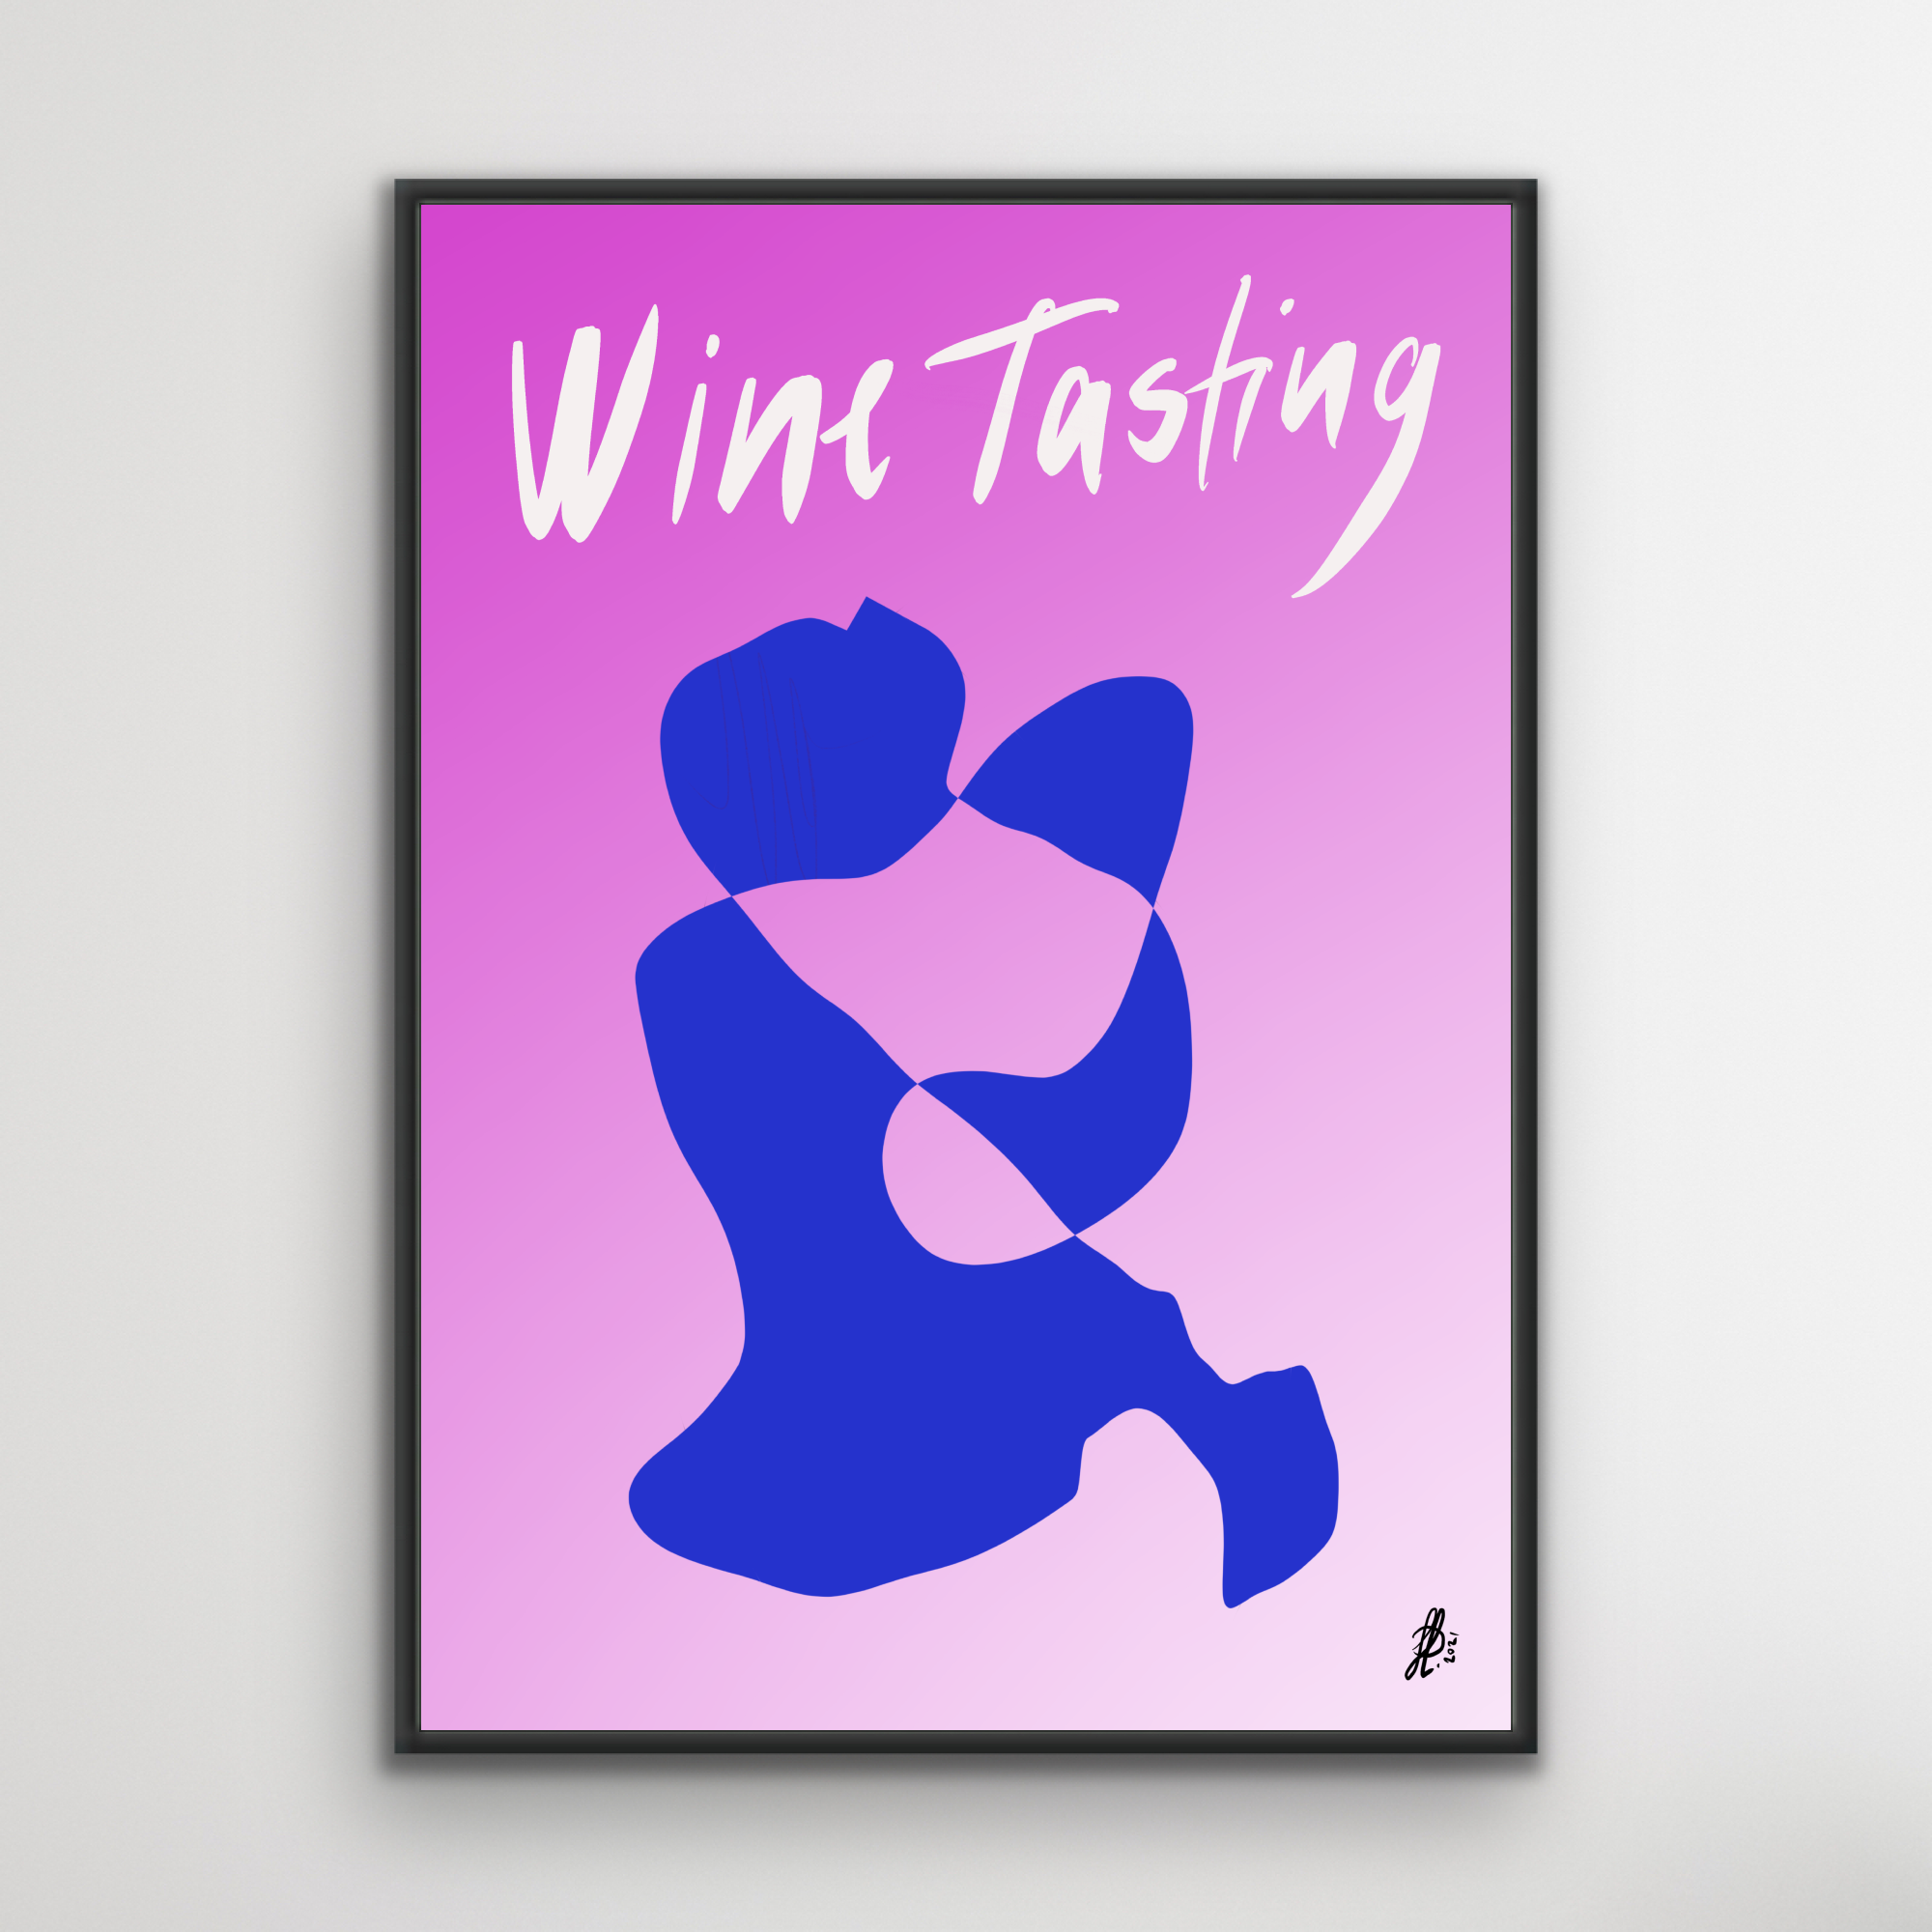 Plakat: "Wine Tasting #2"